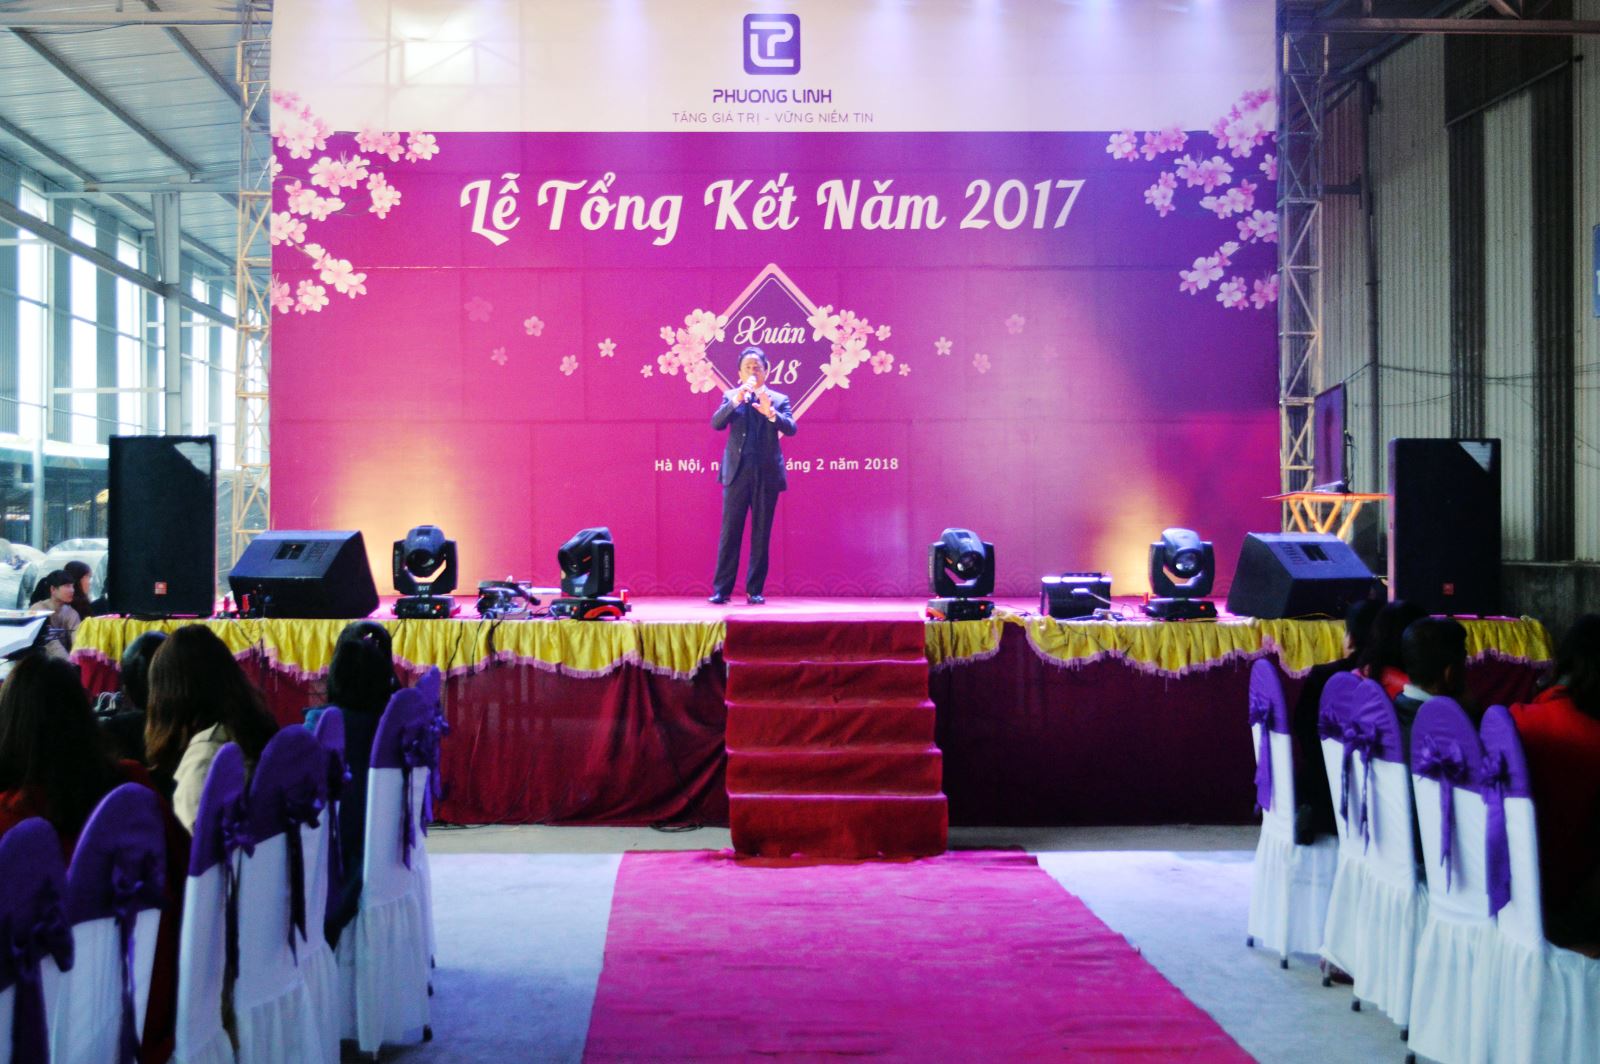 Phương Linh rộn ràng trong tiệc tất niên 2017 - Chúc mừng năm mới 2018-5